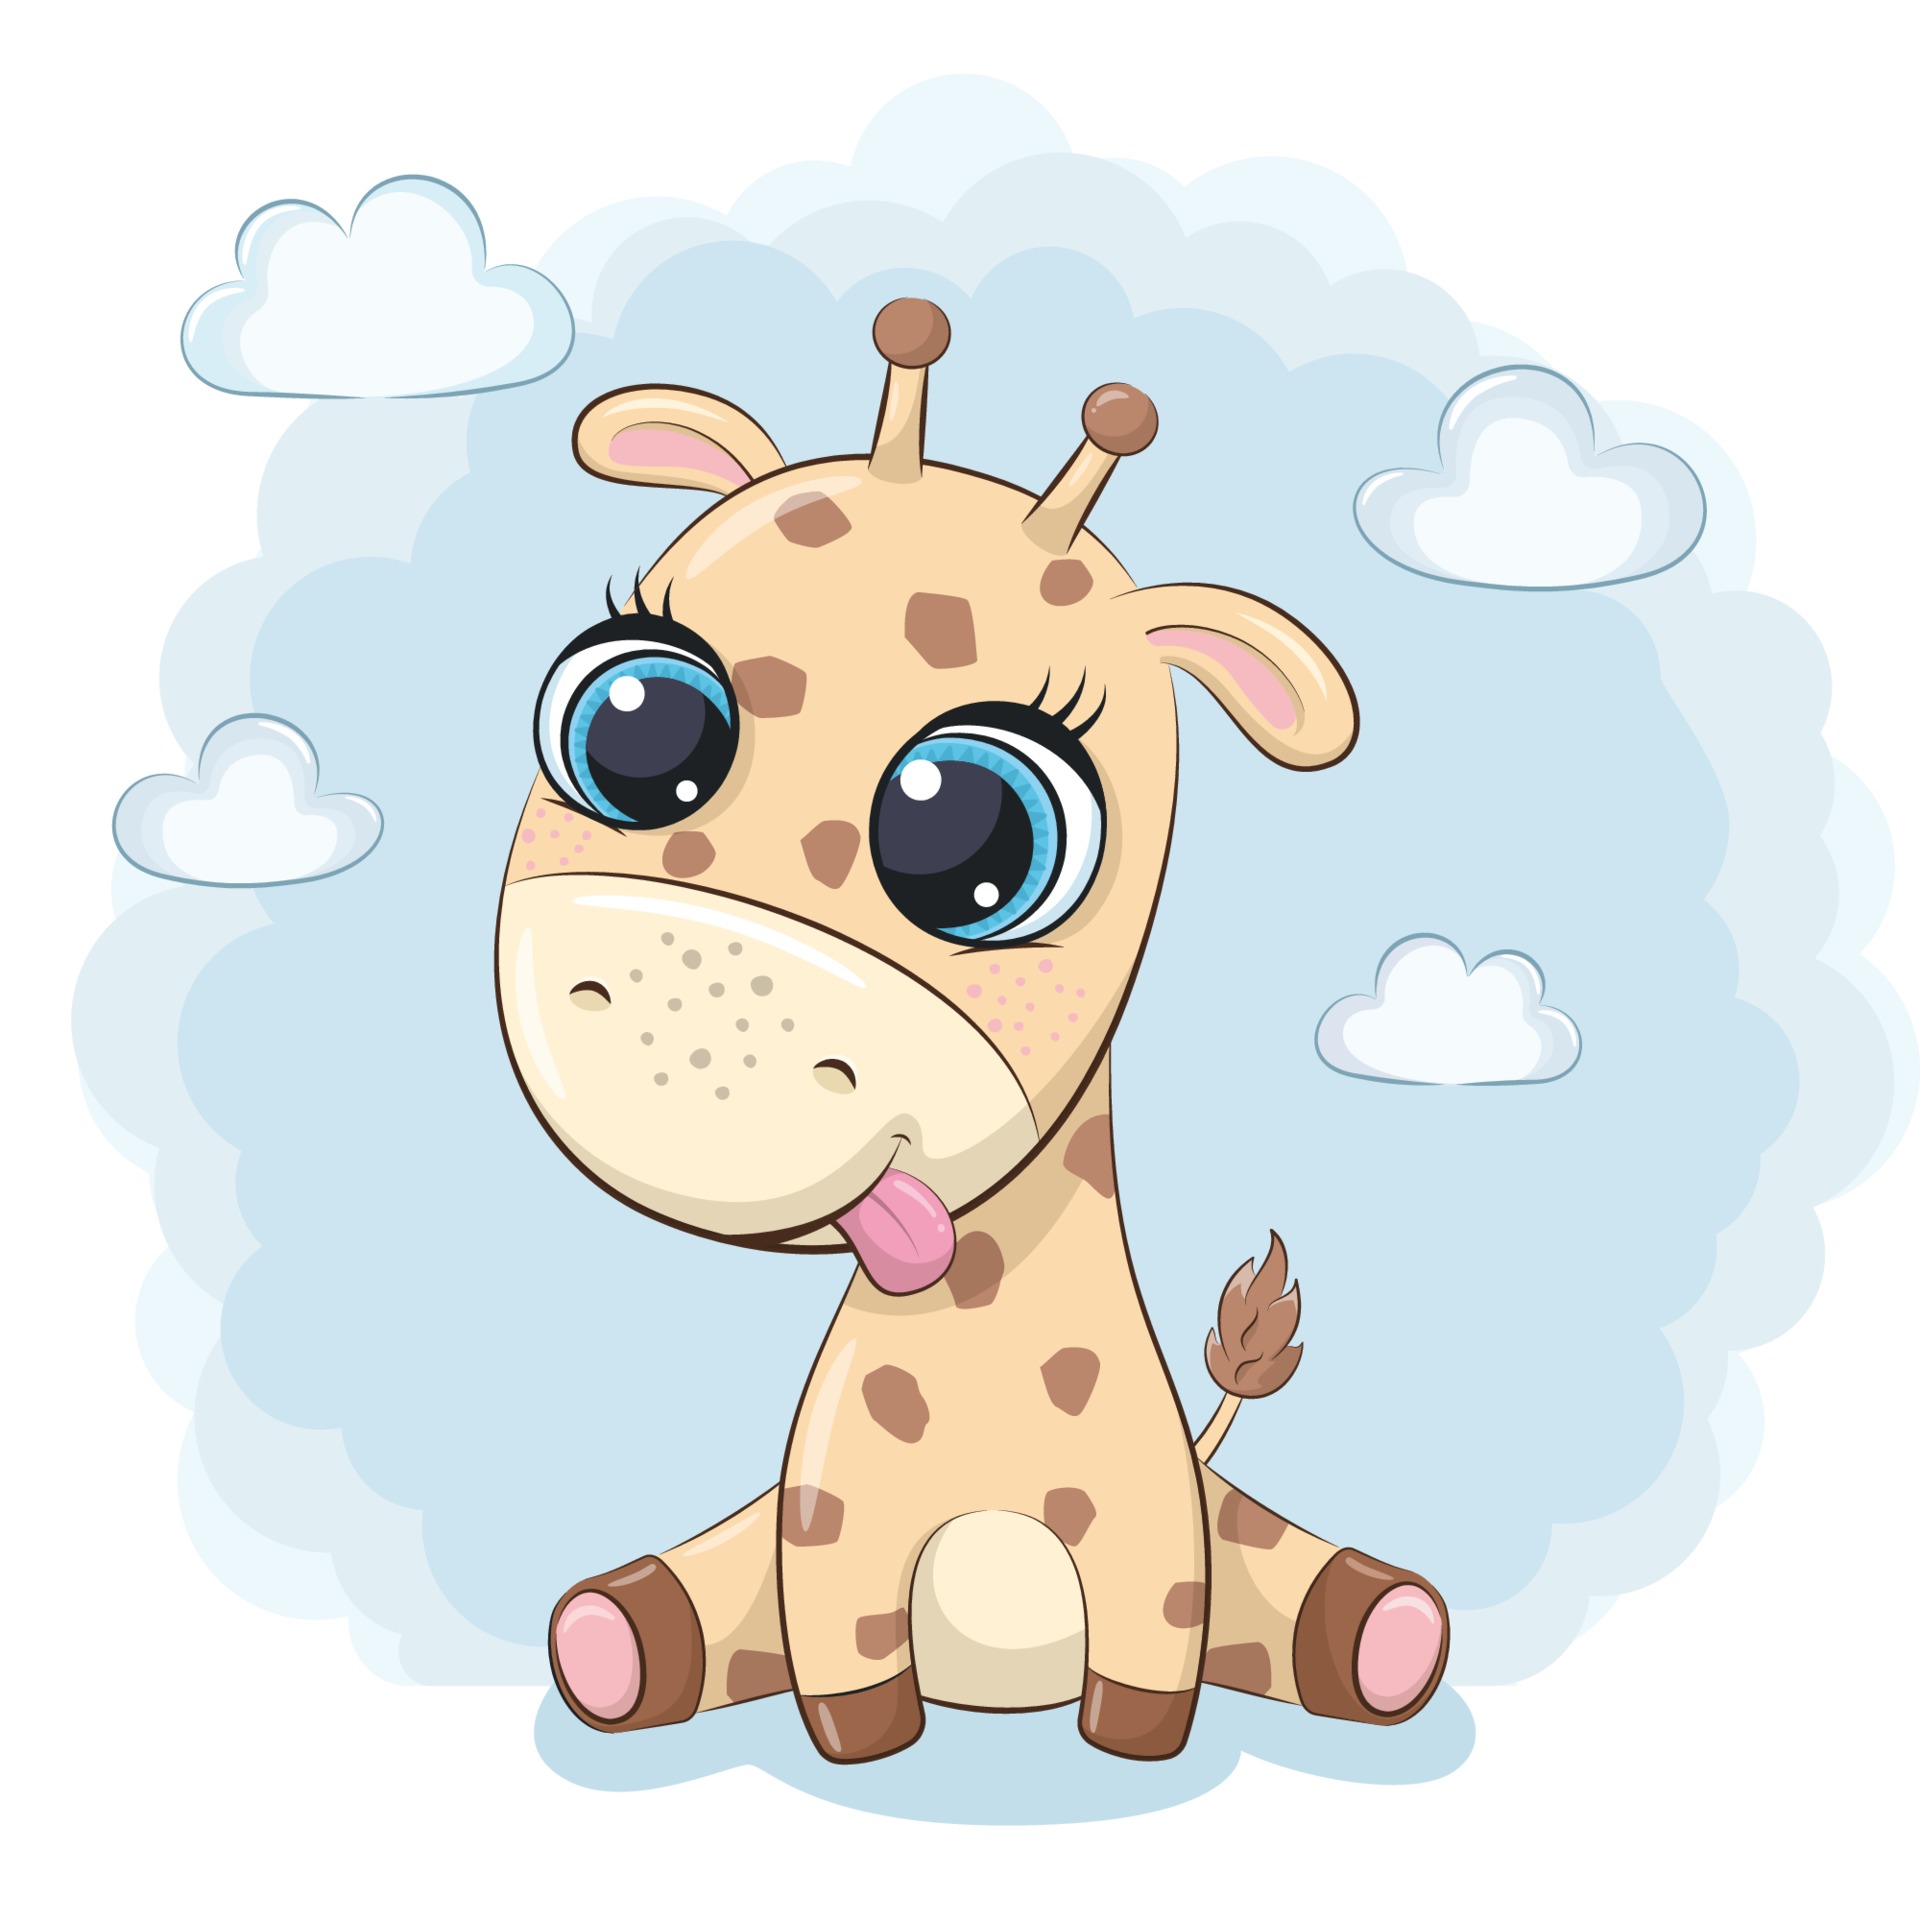 Cute baby giraffe. Vector illustration. 3293044 Vector Art at Vecteezy